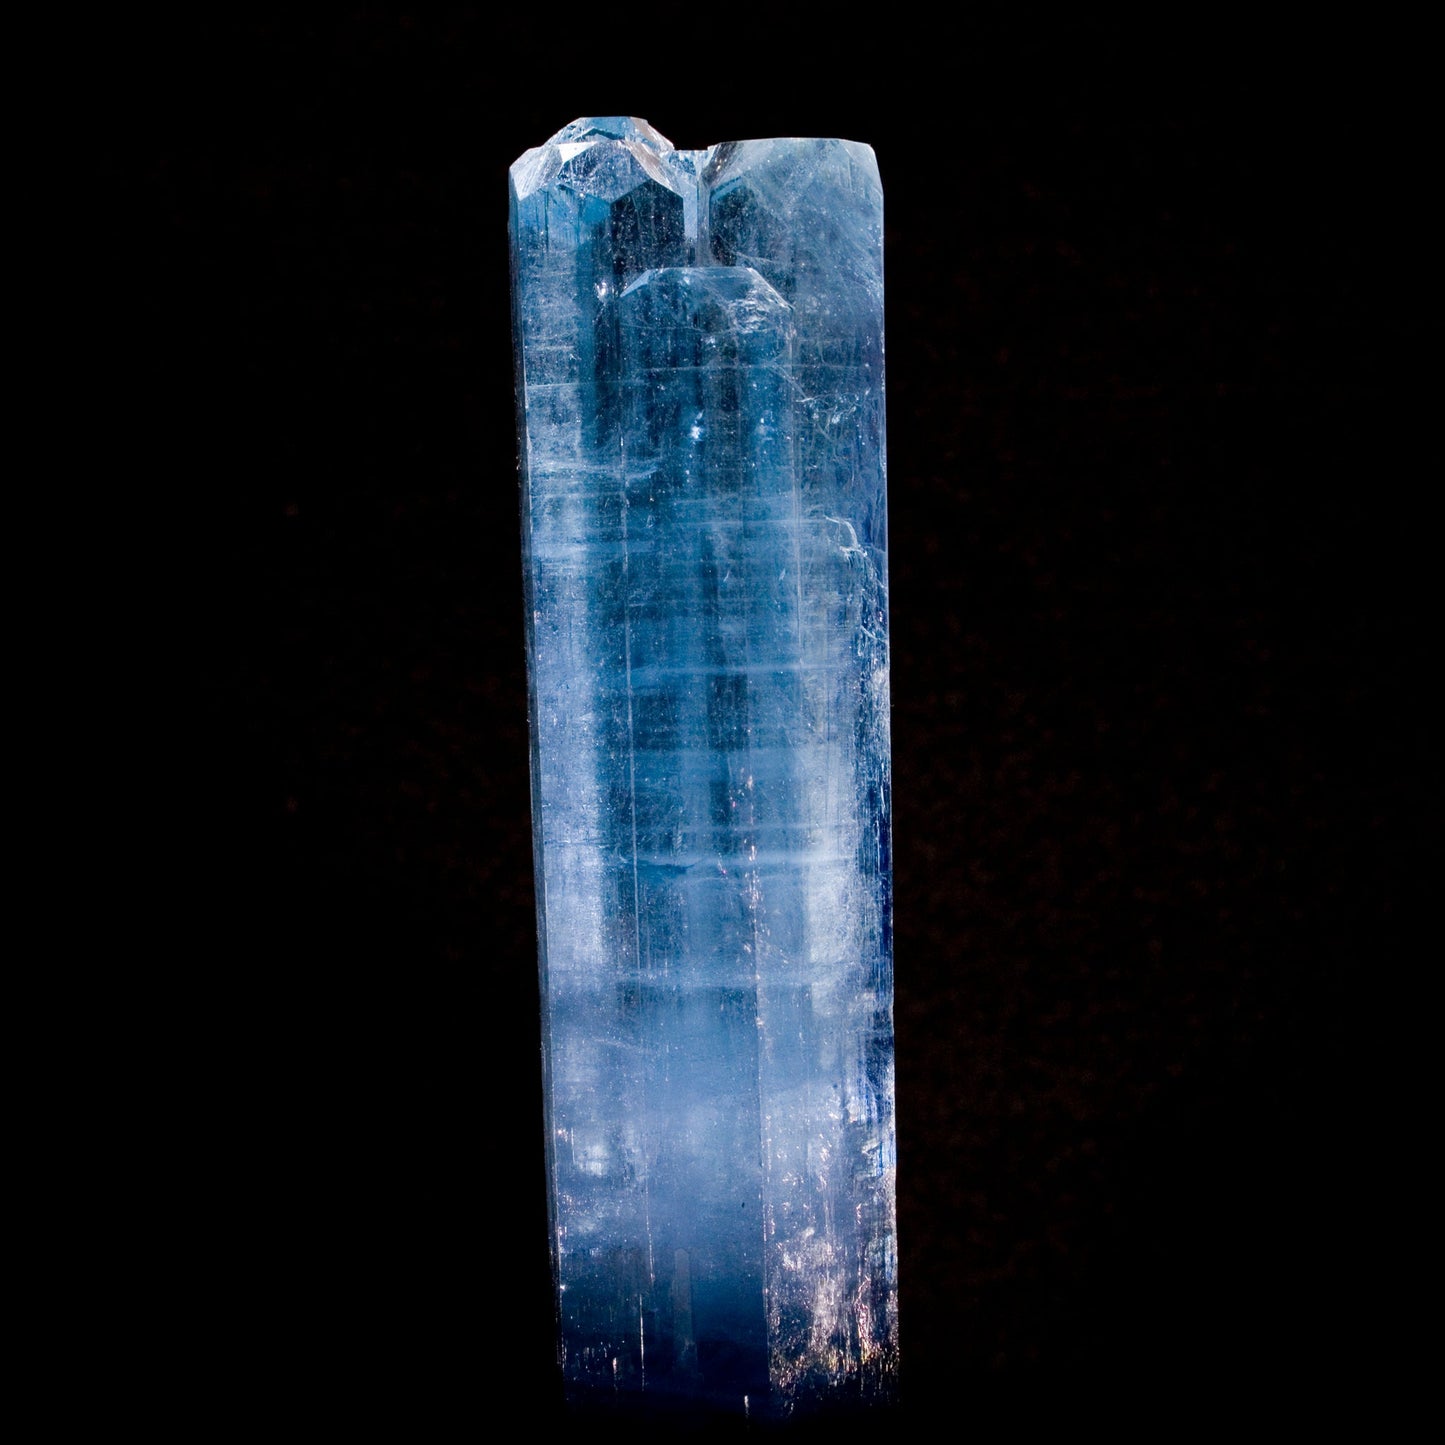 483 Carat Multi-Terminated Aquamarine - Video Aquamarine Superb Minerals 